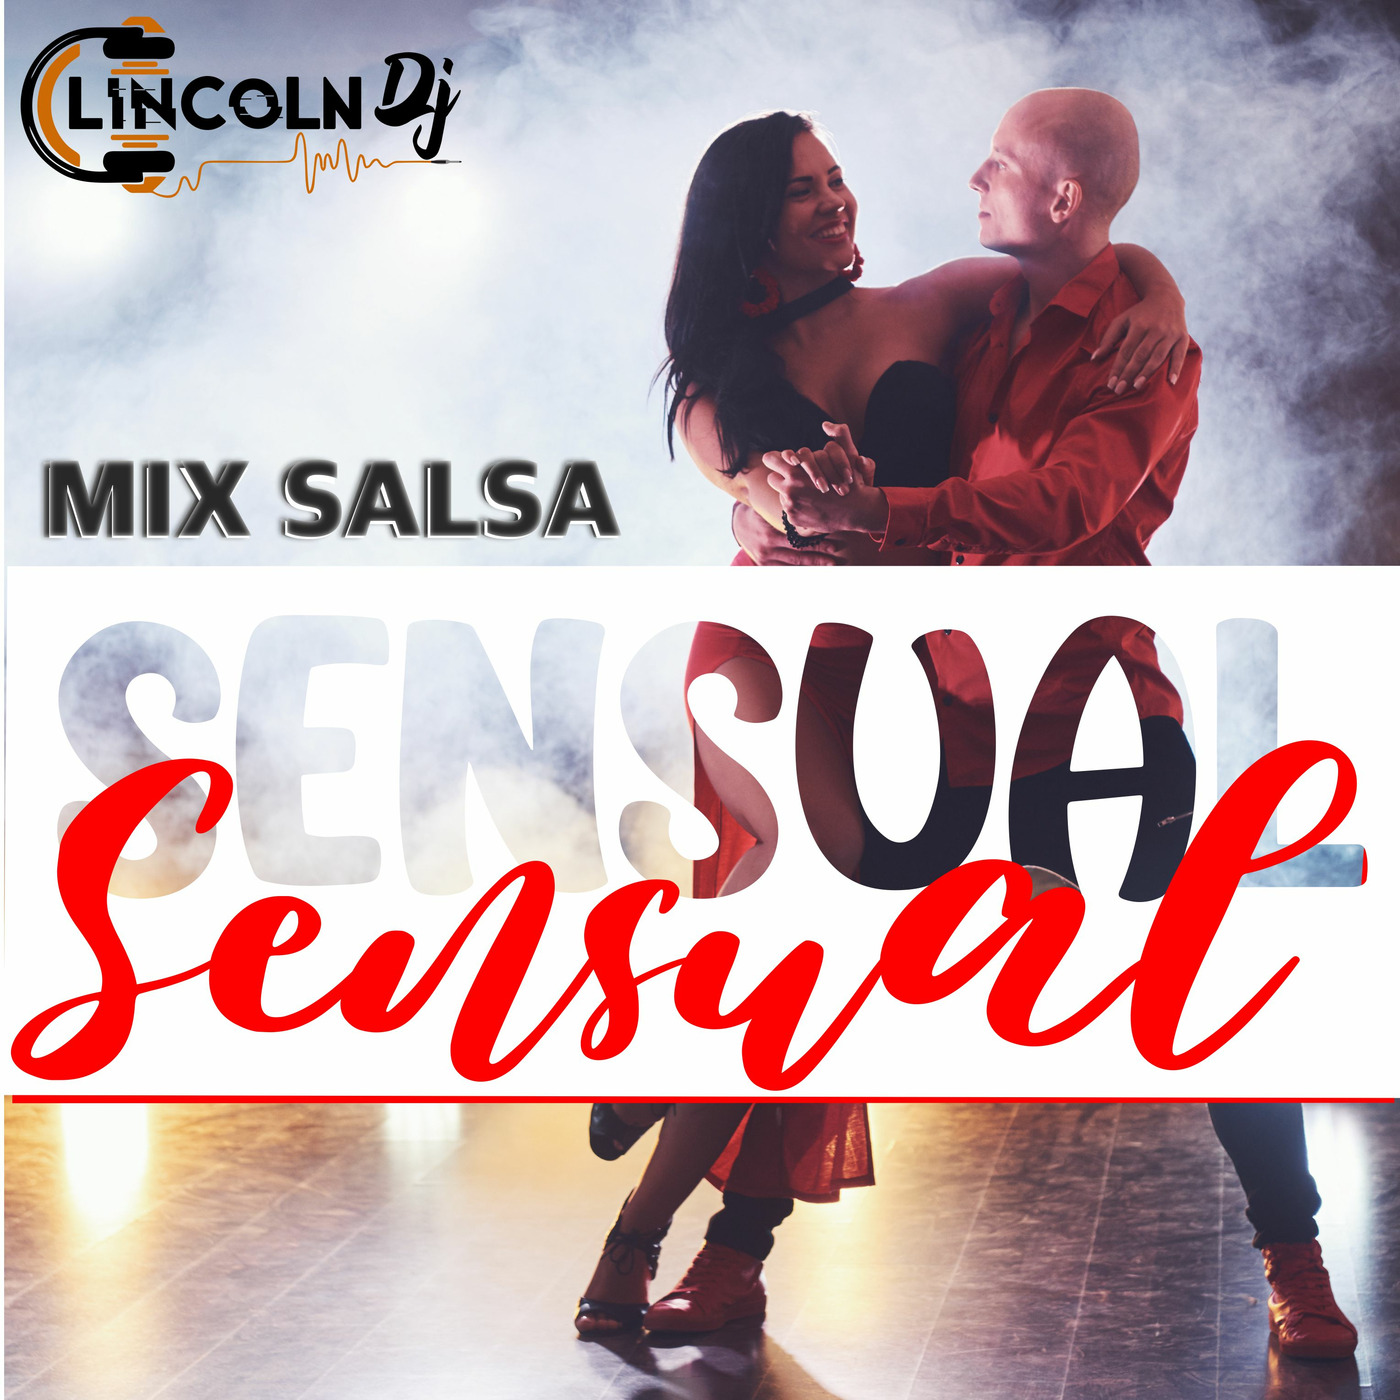 MIX SALSA SENSUAL - DJ LINCOLN